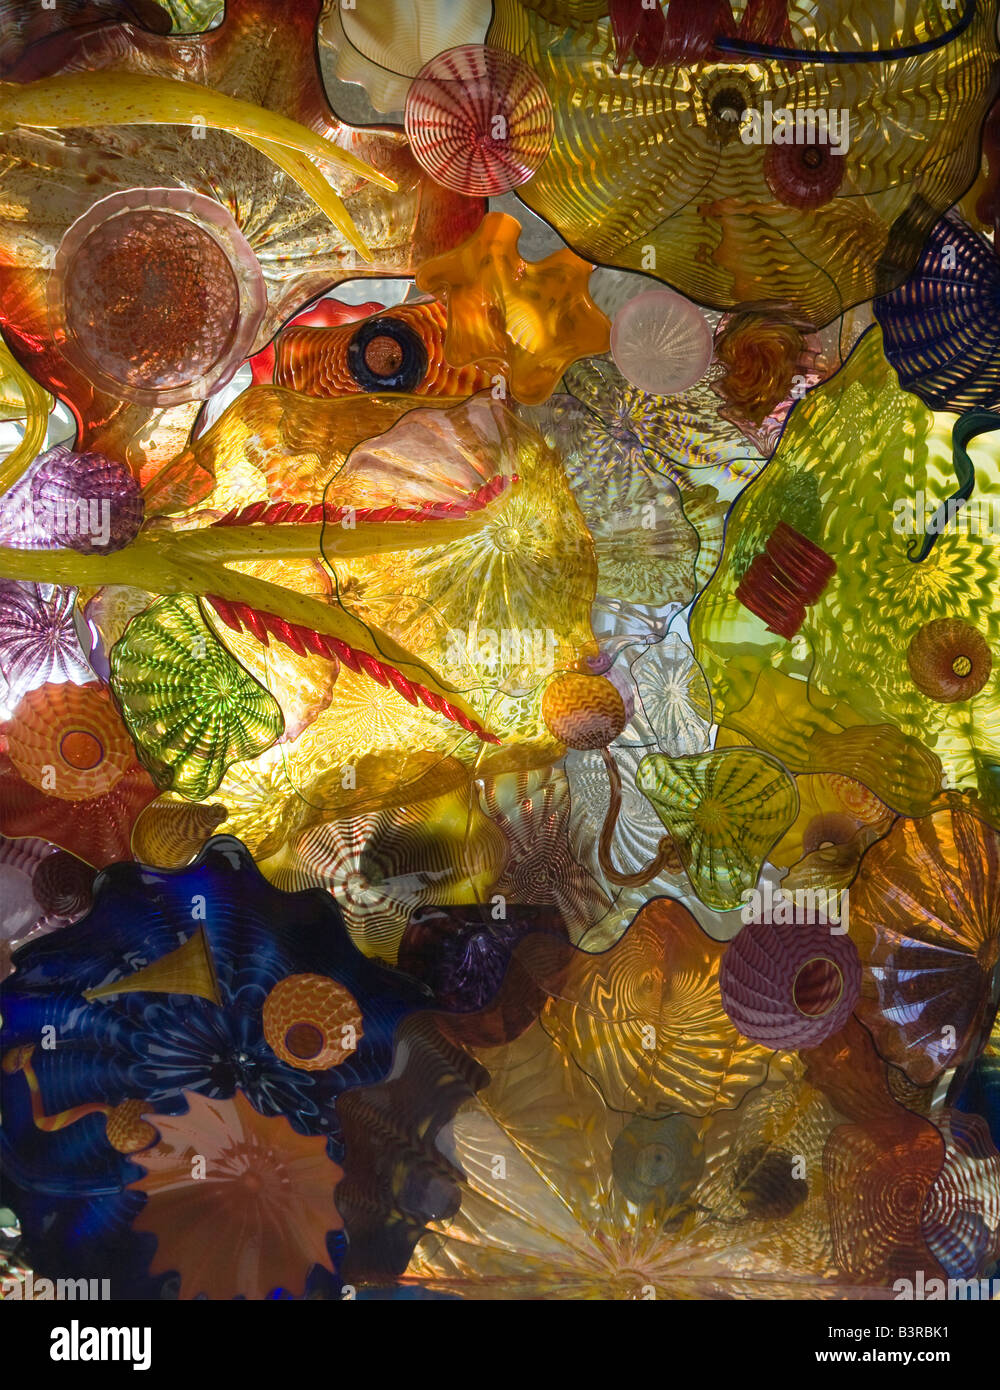 "Chihuly pont de verre", voir l'art du verre en plafond. Musée du verre de l'État de Washington Tacoma WA USA Dale Chihuly Banque D'Images